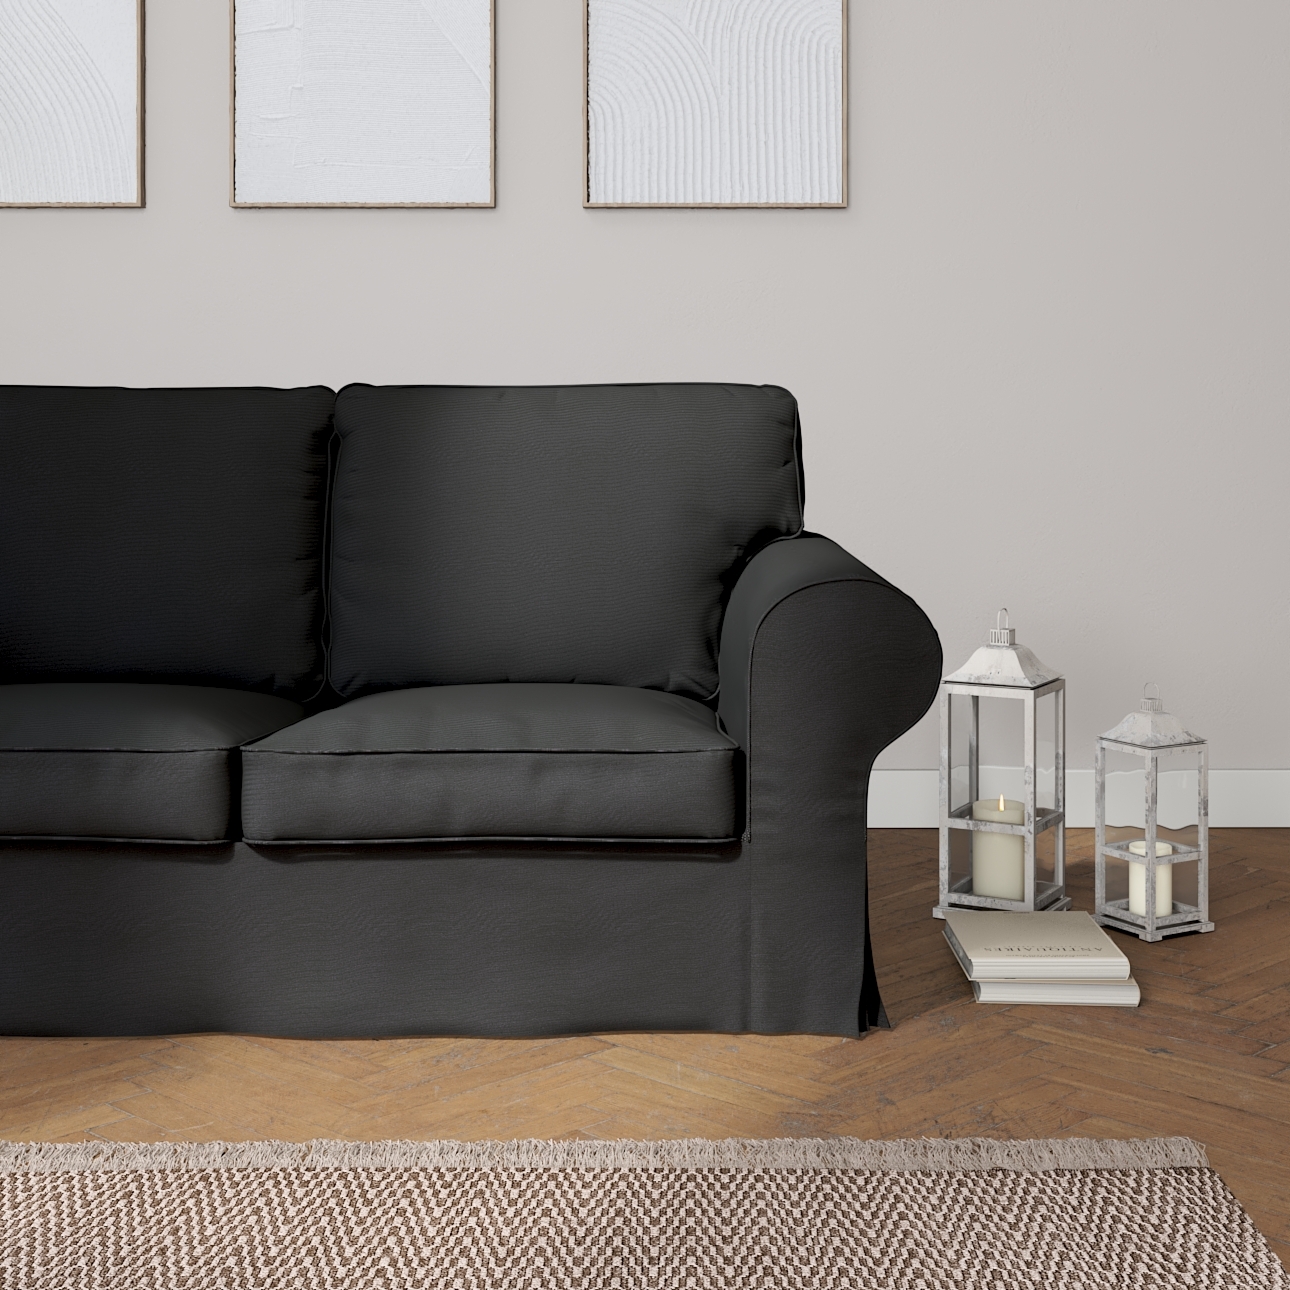 Bezug für Ektorp 2-Sitzer Schlafsofa NEUES Modell, schwarz, Sofabezug für günstig online kaufen